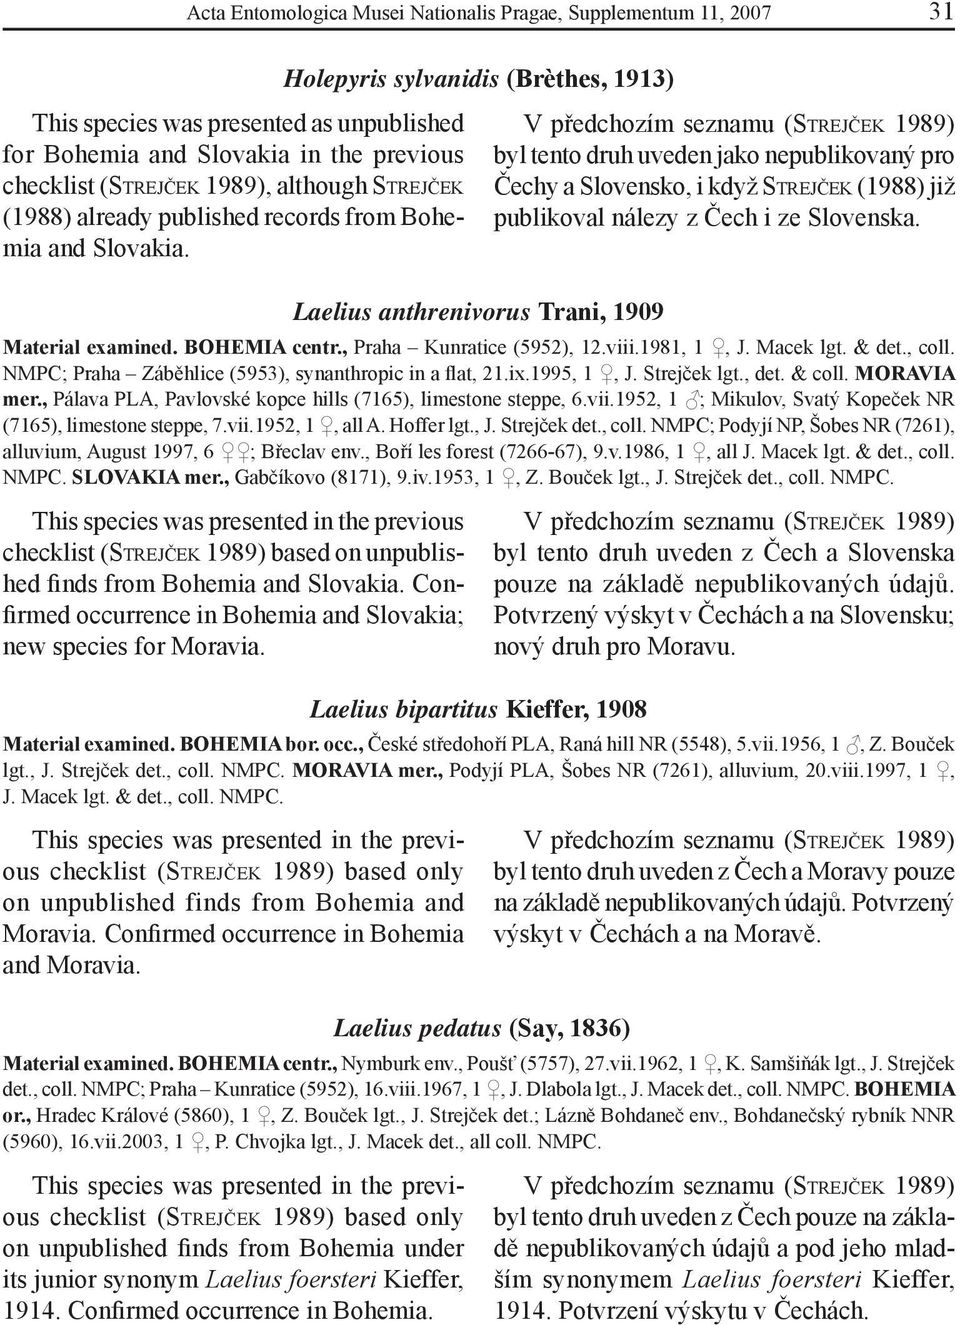 Holepyris sylvanidis (Brèthes, 1913) Laelius anthrenivorus Trani, 1909 byl tento druh uveden jako nepublikovaný pro Čechy a Slovensko, i když STREJČEK (1988) již publikoval nálezy z Čech i ze